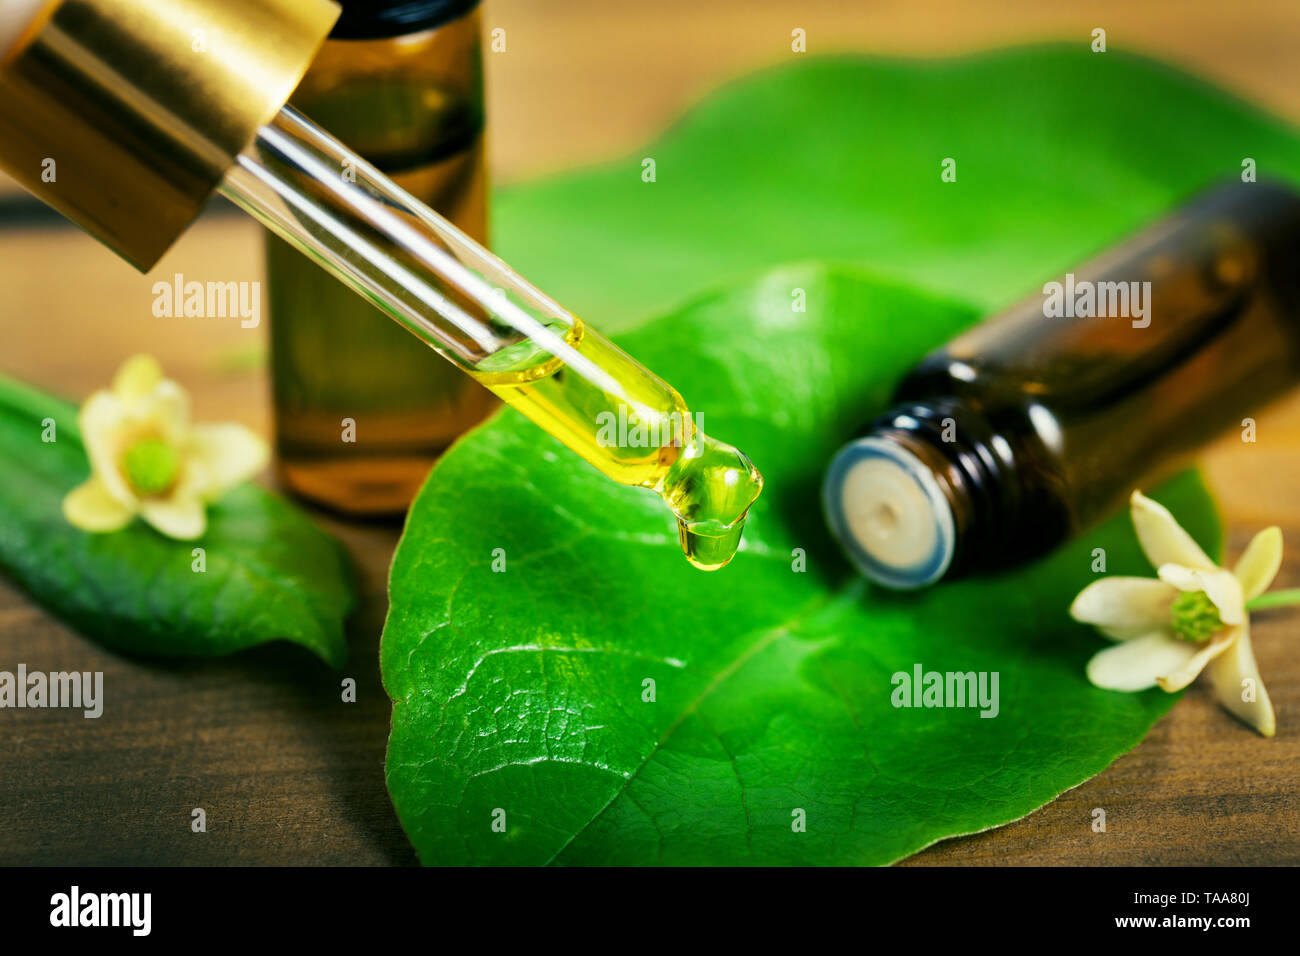 La medicina di erbe - olio essenziale che gocciola dalla pipetta sulla foglia verde Foto Stock